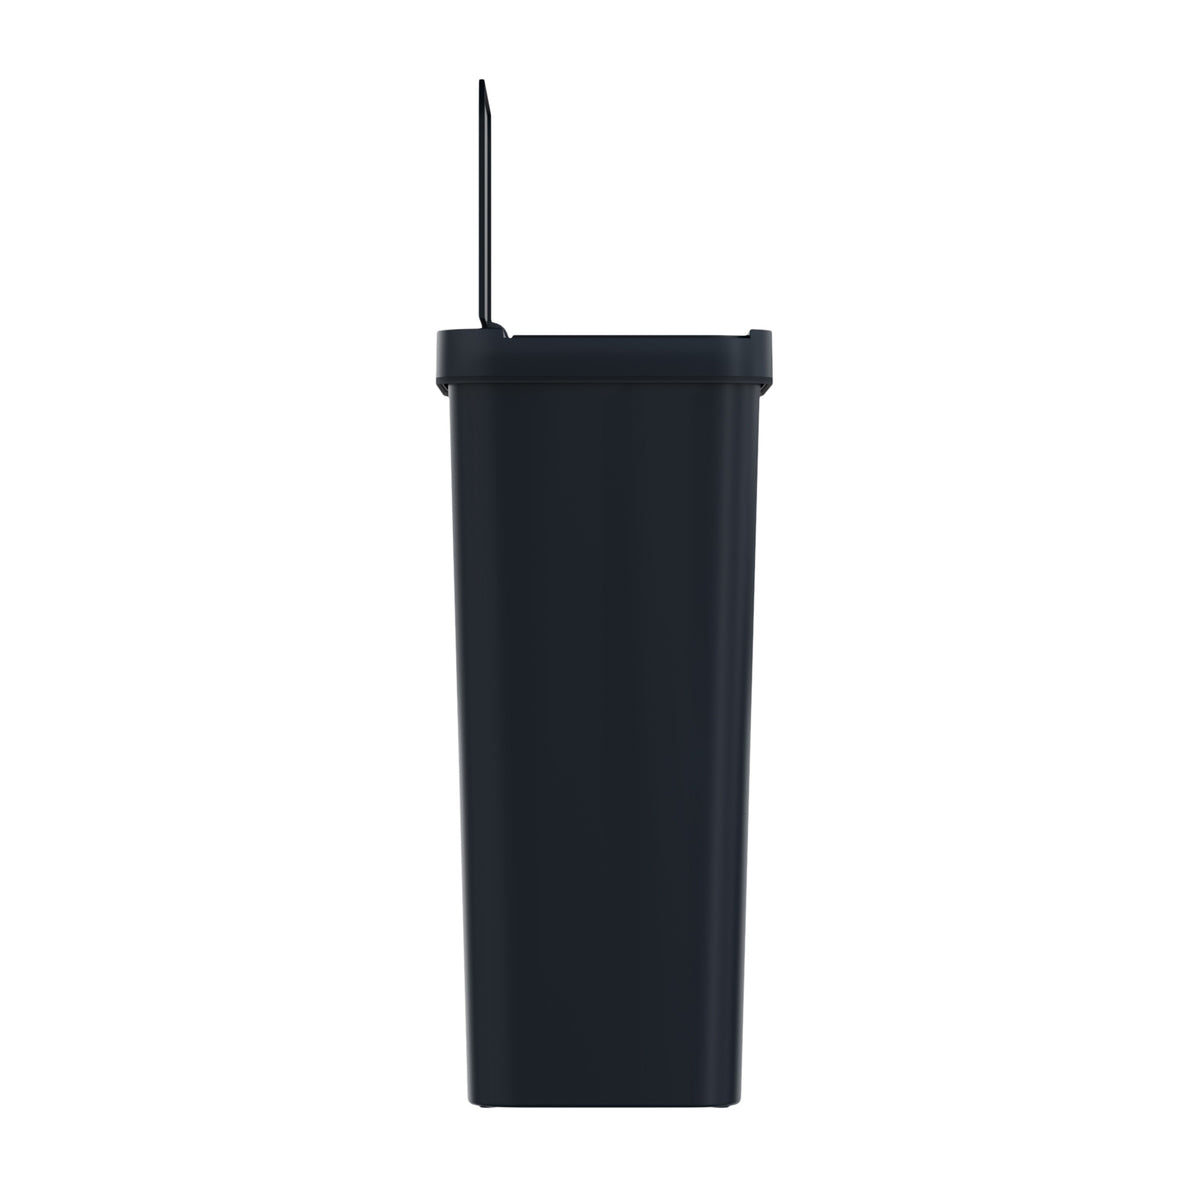 13.2 Gallon / 50 Liter Prime Plastic Sensor Trash Can (Black)